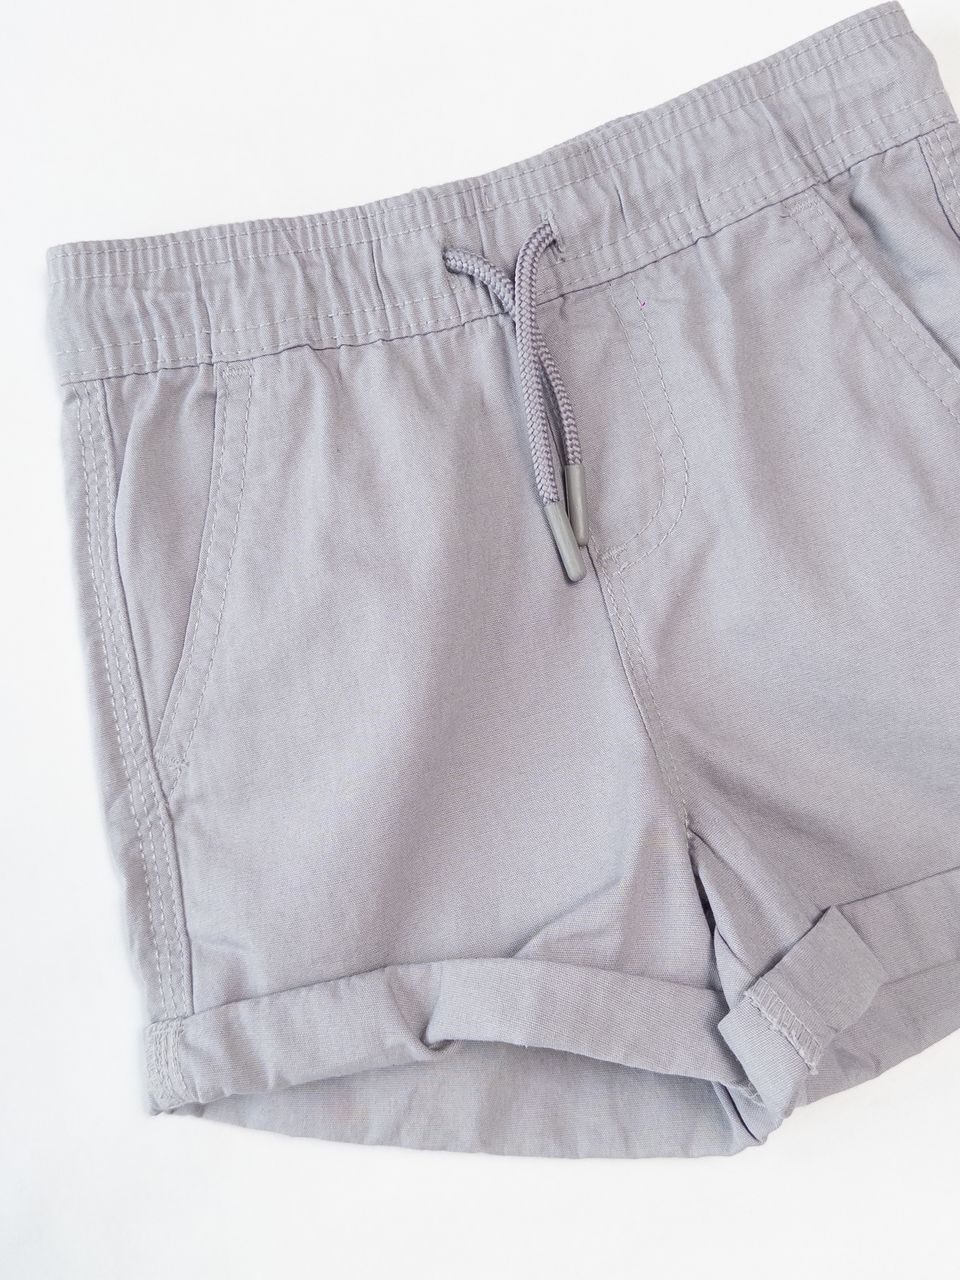 Шорты из плотного хлопка для мальчика с утягивающим шнурком в поясе с карманами цвет серый рост 98 см Primark